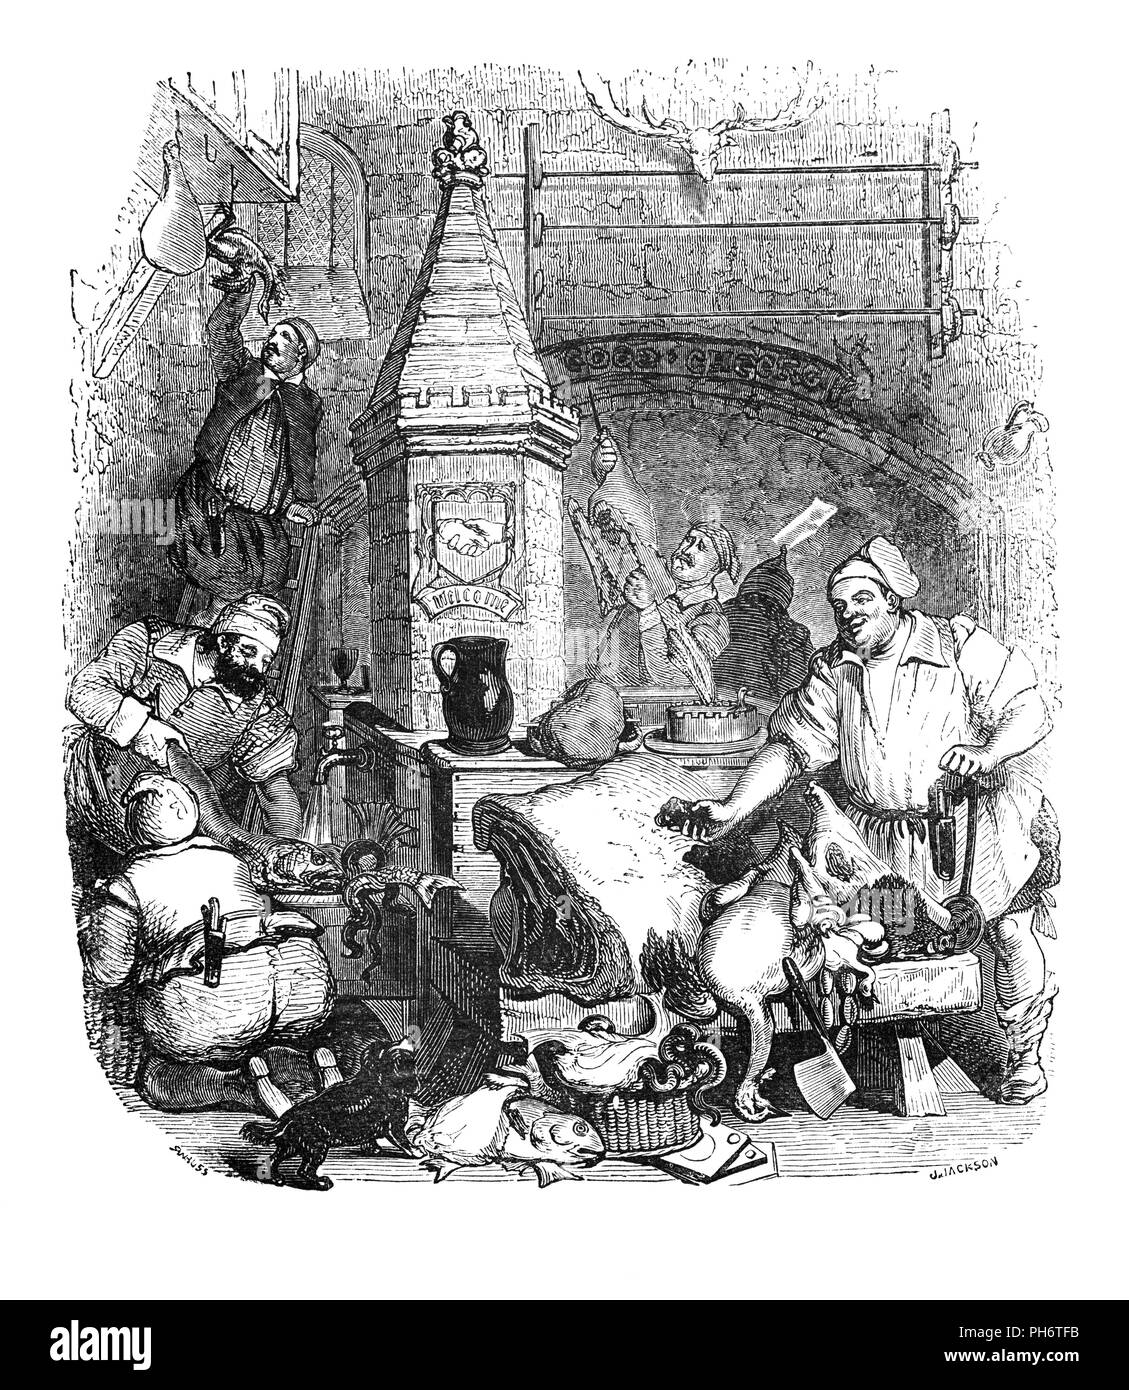 Reliques de Percy est un folio de ballades et de chansons populaires recueillies par Mgr Thomas Percy et publié en 1765. Certains d'entre eux ont été trouvés sur le sol dans la maison de son ami Humphrey Pitt de Shifnal, une petite ville de marché de Shropshire, où Pitt, la servante avait été en utilisant les feuilles d'allumer des feux. Les autres sources sont la Bibliothèque Pepys broadside ballads de recueillis par Samuel Pepys. Ils servent à illustrer la vie intérieure du 16ème siècle sous le règne de la Reine Elizabeth I. celui-ci illustre une vieille berline de beurre très usés, les crochets à l'arrêt et une ancienne cuisine, qu'entretenir une demi-douzaine d'ol Banque D'Images